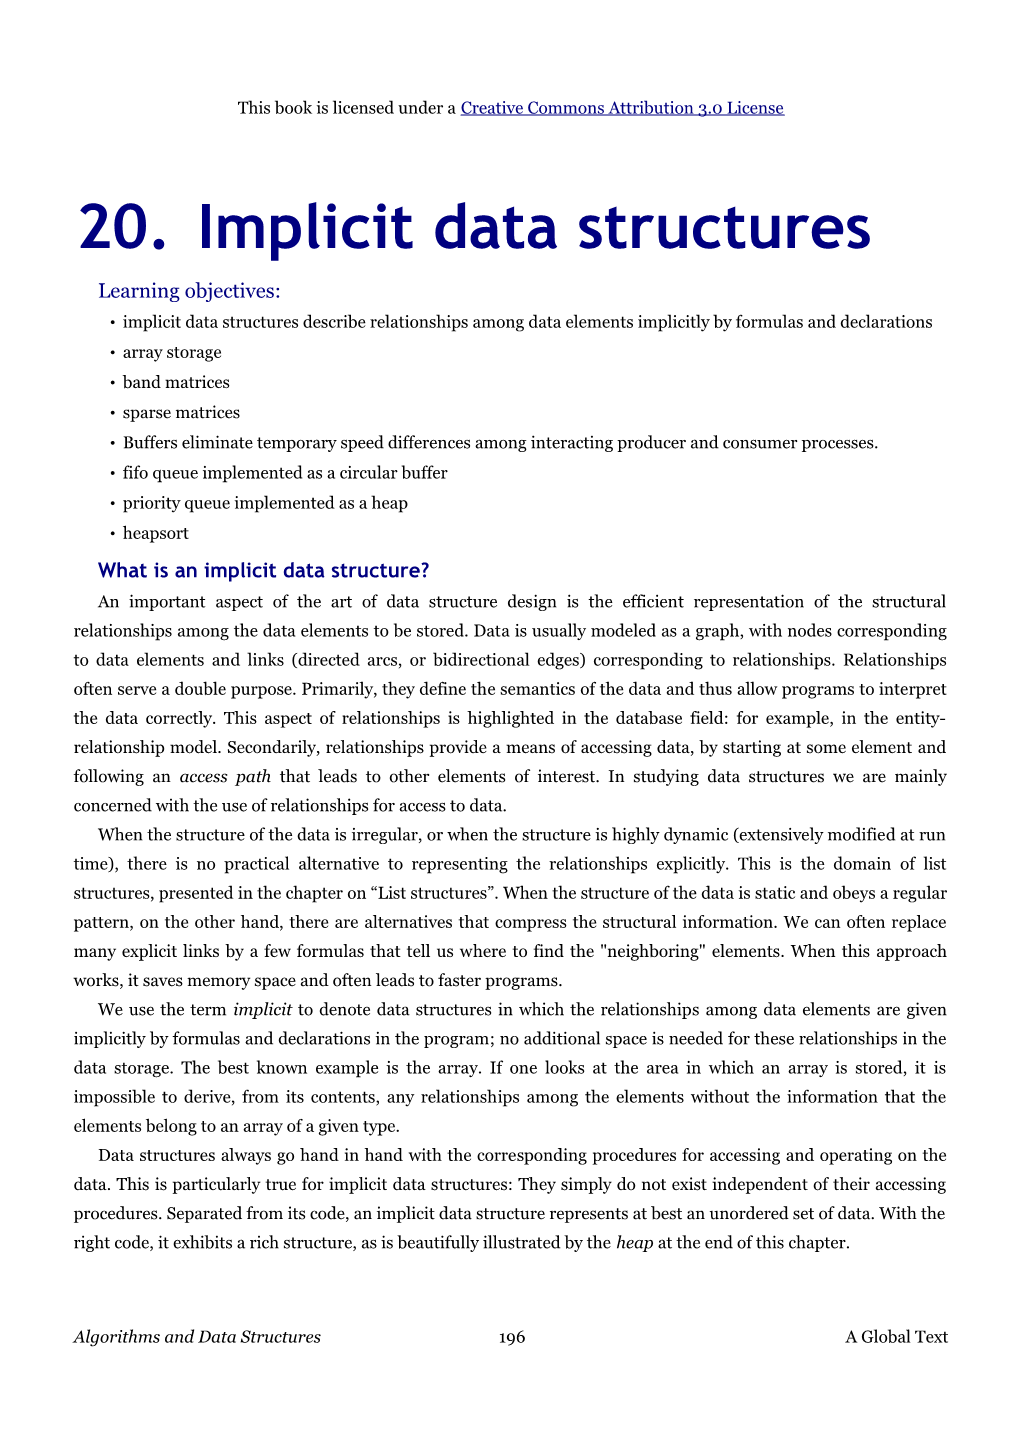 20. Implicit Data Structures